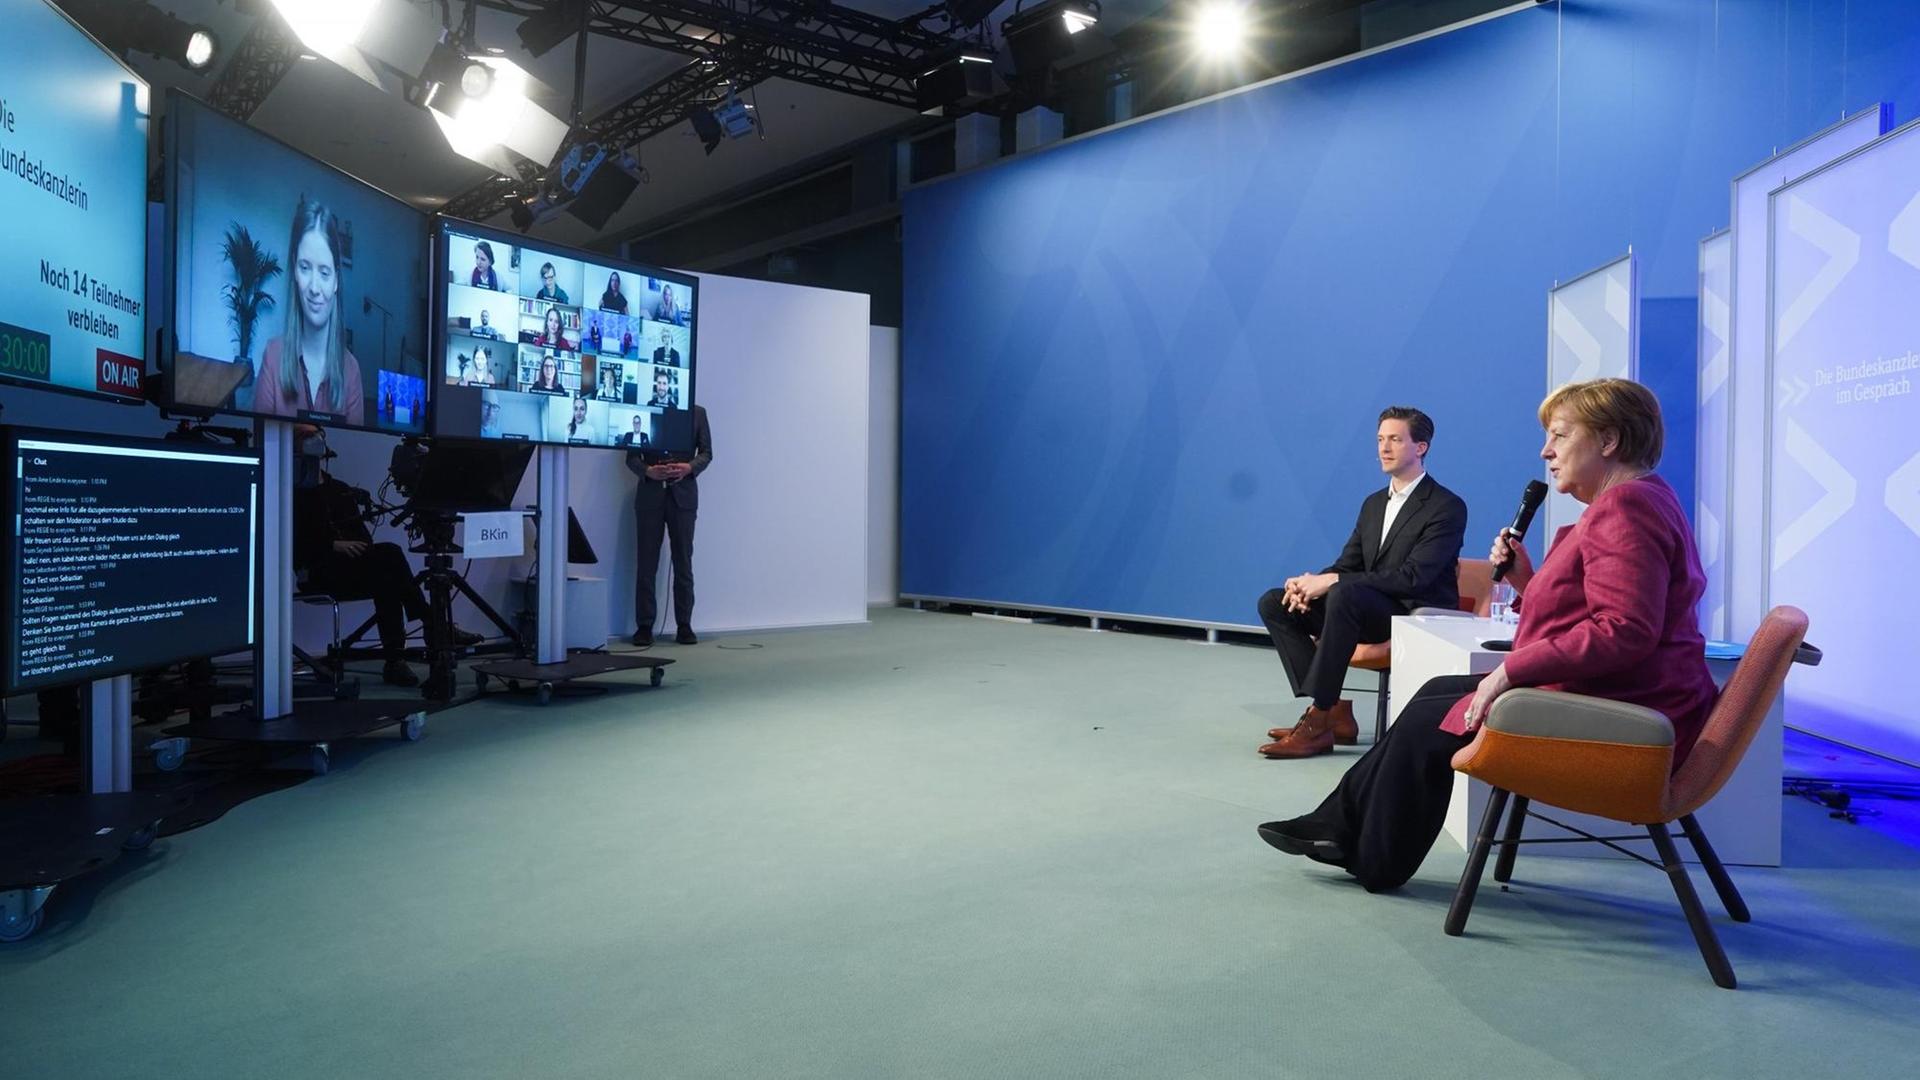 Bundeskanzlerin Angela Merkel (CDU) spricht neben dem Moderator bei der virtuellen Reihe «Die Bundeskanzlerin im Gespräch» mit Kunst- und Kulturschaffenden.